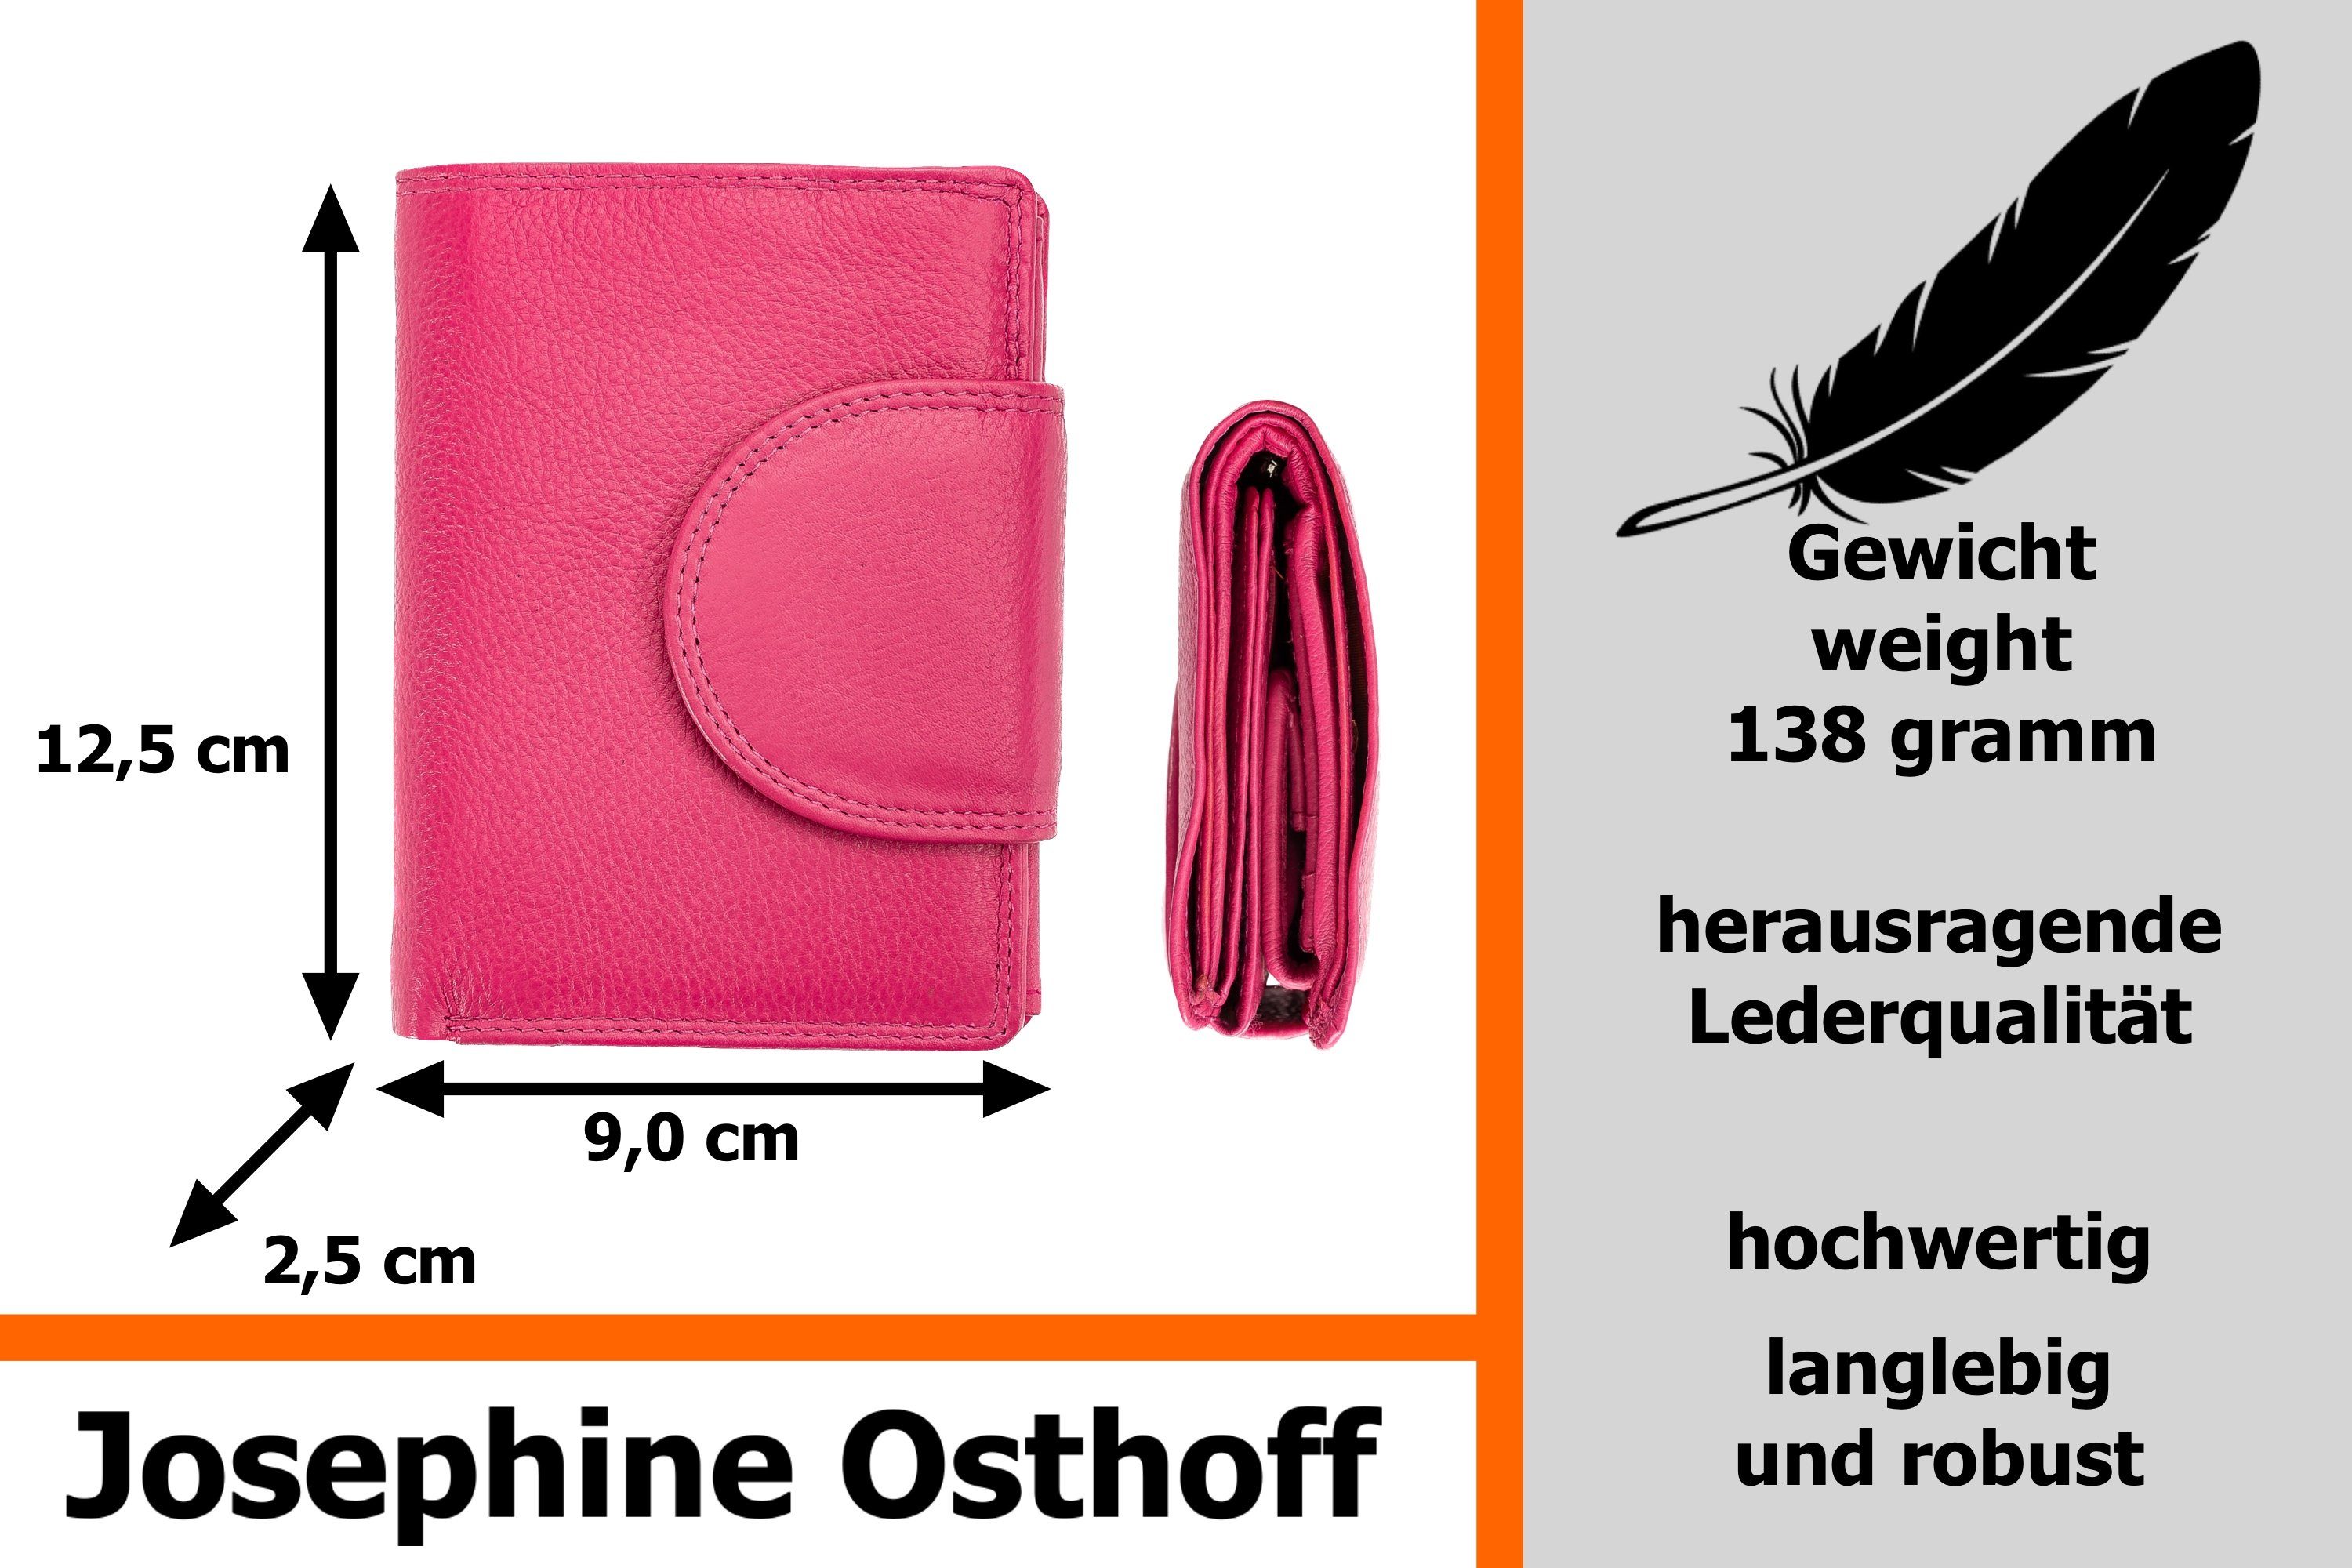 Josephine Osthoff Brieftasche Wiener Minibrieftasche fuchsia Geldbörse